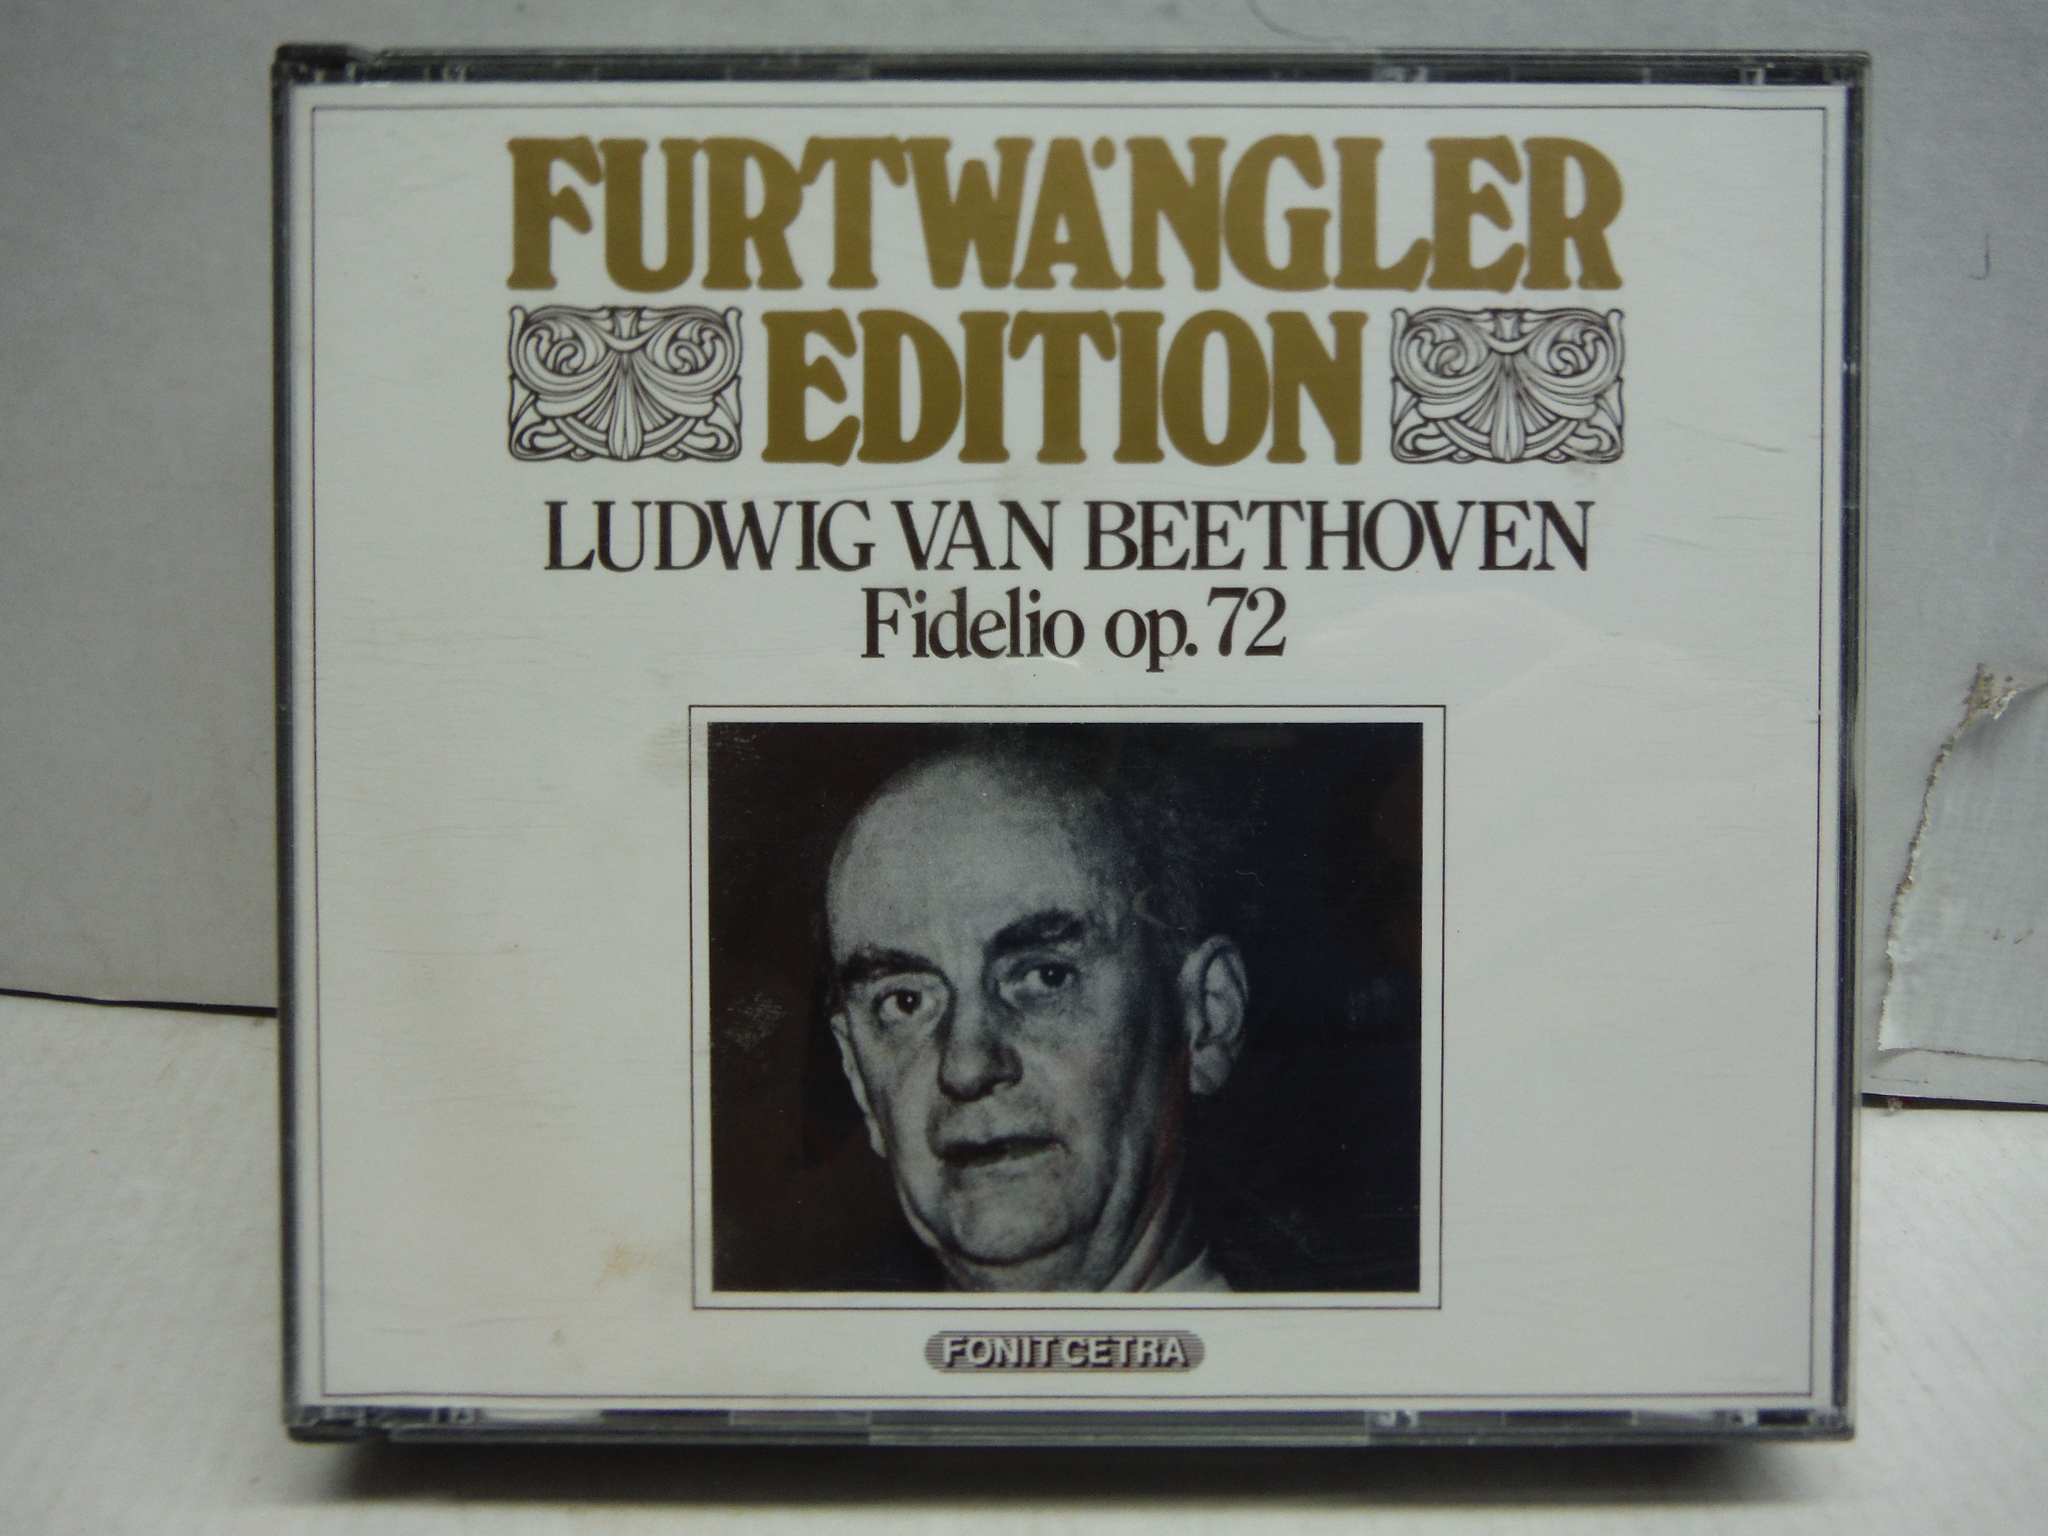 Beethoven: Fidelio, Op. 72 (Vienna 12.10.1953) (Furtwangler Edition)